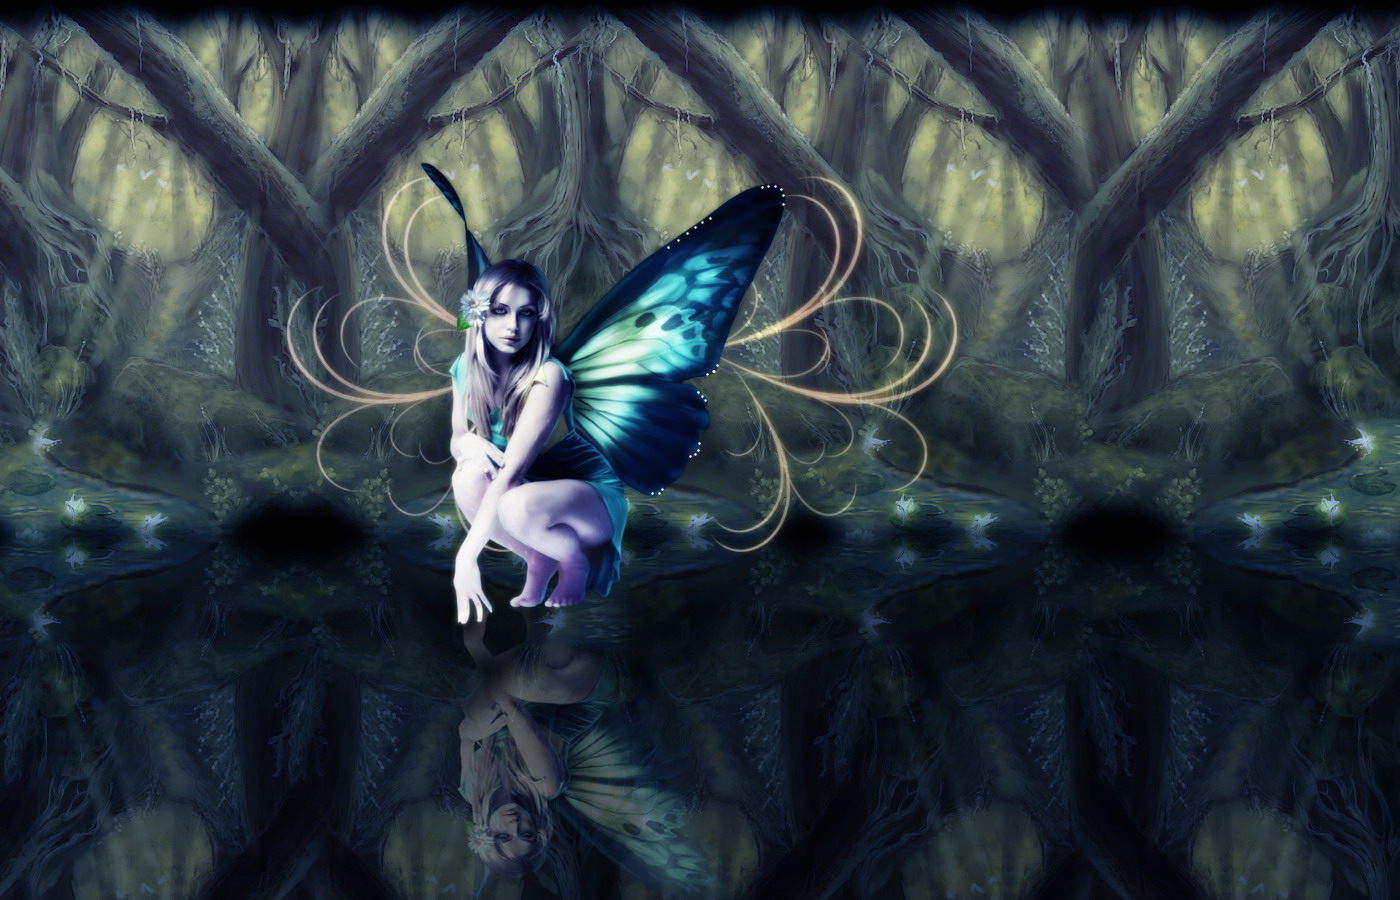 http://4.bp.blogspot.com/-C7A21L2Qcgw/Tv_e-t3LpYI/AAAAAAAABmM/zLbSKs-qyuA/s1600/Fantasy-Wallpapers-Enchanting-Night-Fairy.jpg